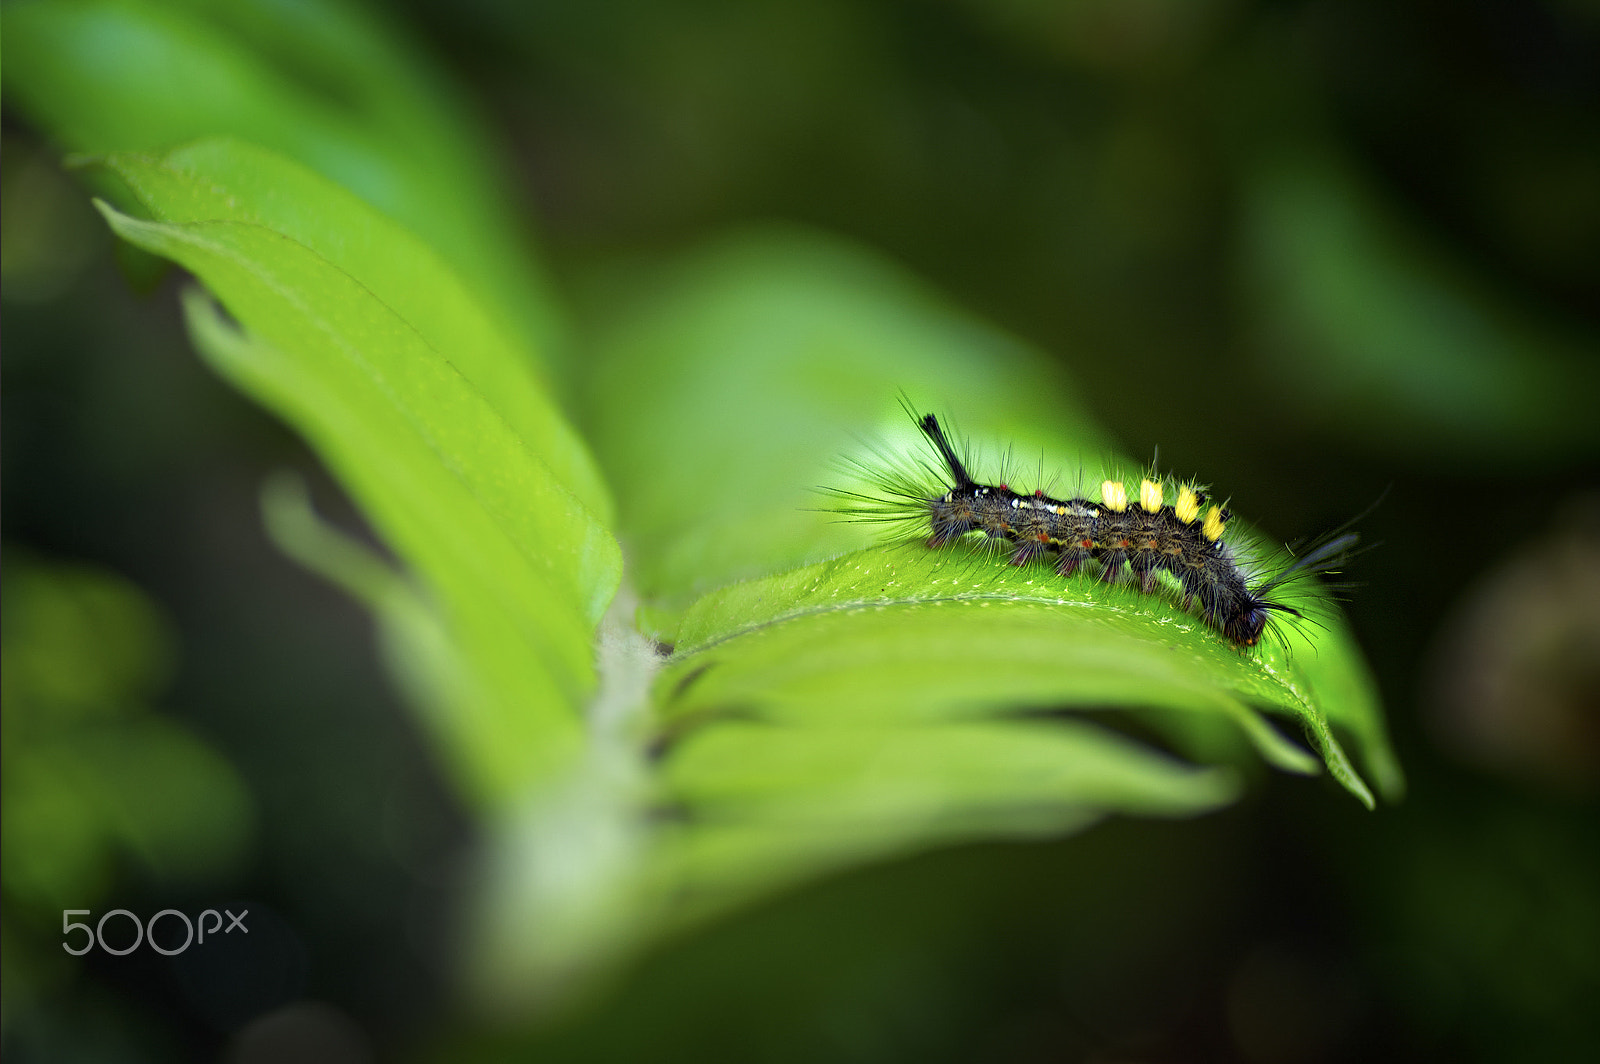 Pentax K-3 sample photo. Caterpillar photography